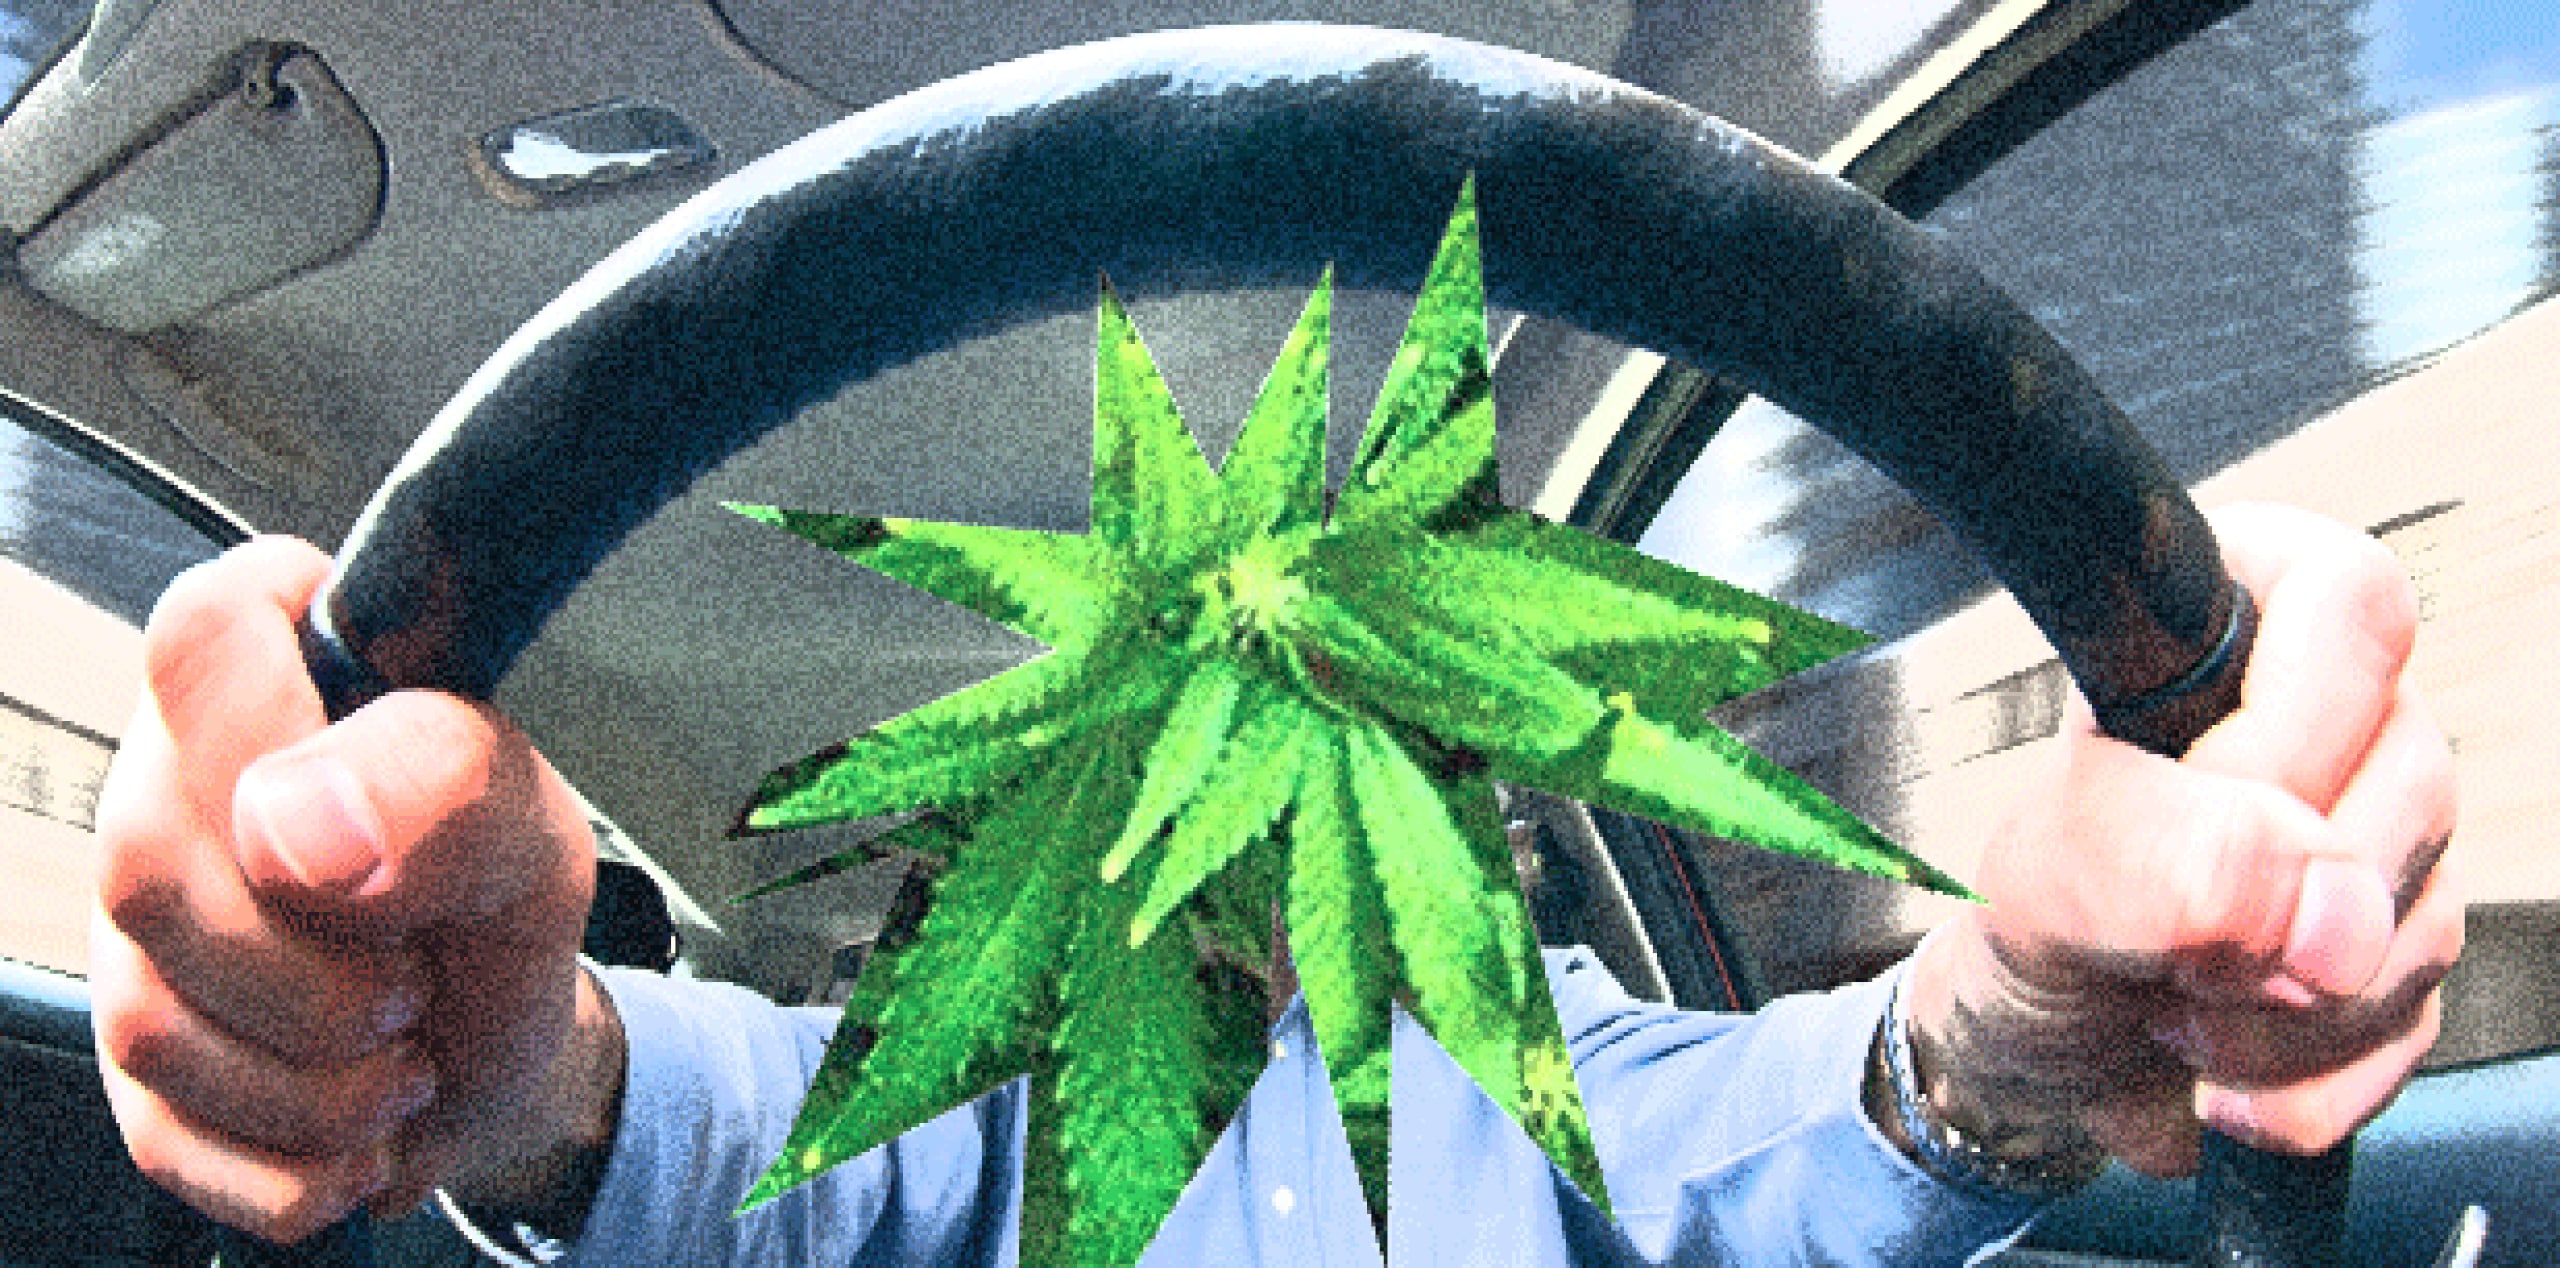 El pasado abril entró en vigor una enmienda a la Ley de Drogas Peligrosas de 1948 que permite cultivar y consumir marihuana en Jamaica, siempre que sea con fines de investigación, medicinales o religiosos. (Archivo)